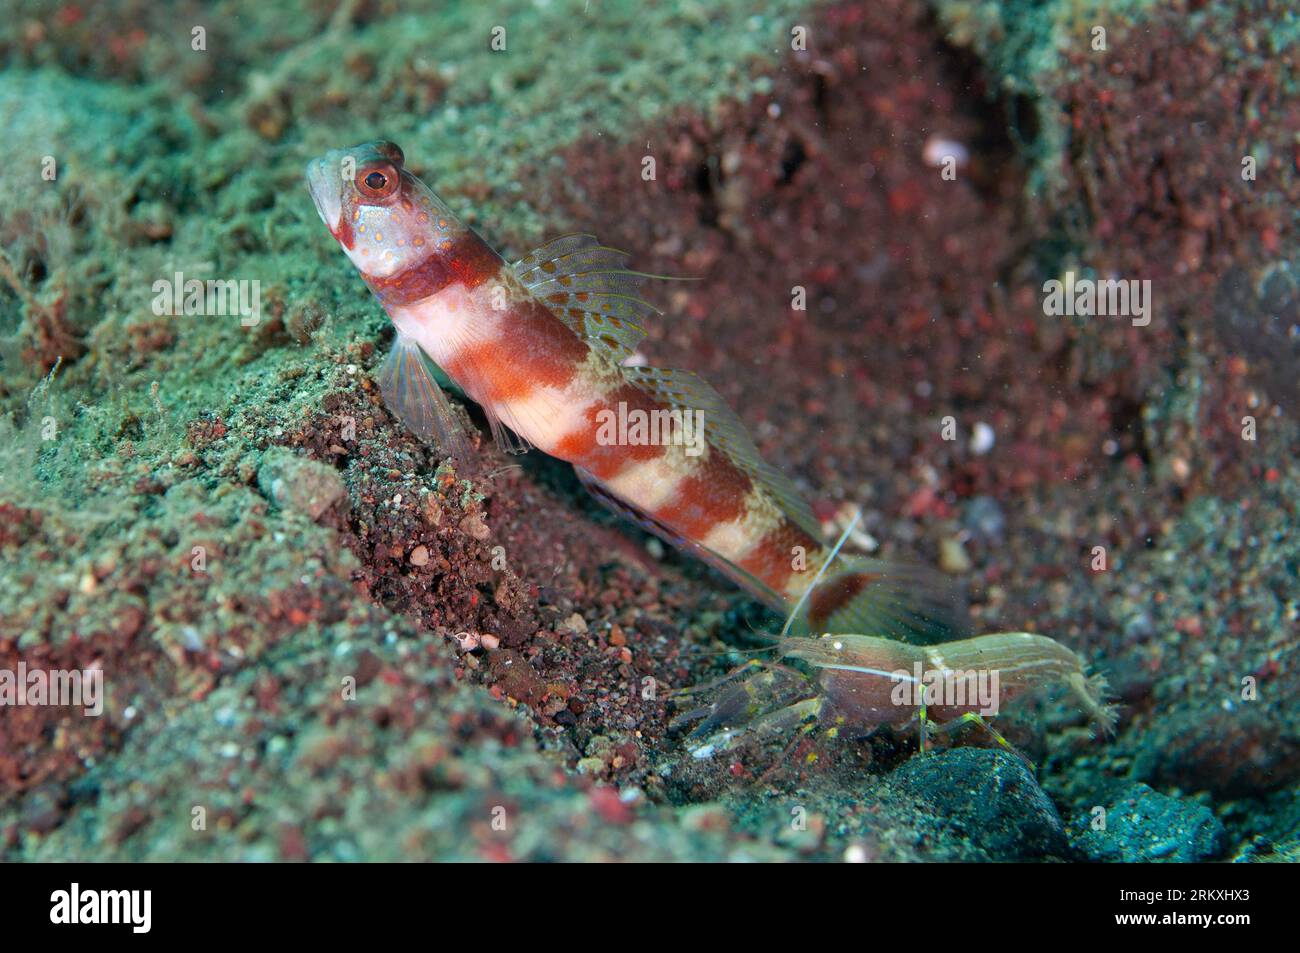 Blotchy Shrimpgoby, Amblyeleotris periophthalma, with Snapping Shrimp, Alpheus sp, Melasti dive site, Amed, Karangasem, Bali, Indonesia Stock Photo